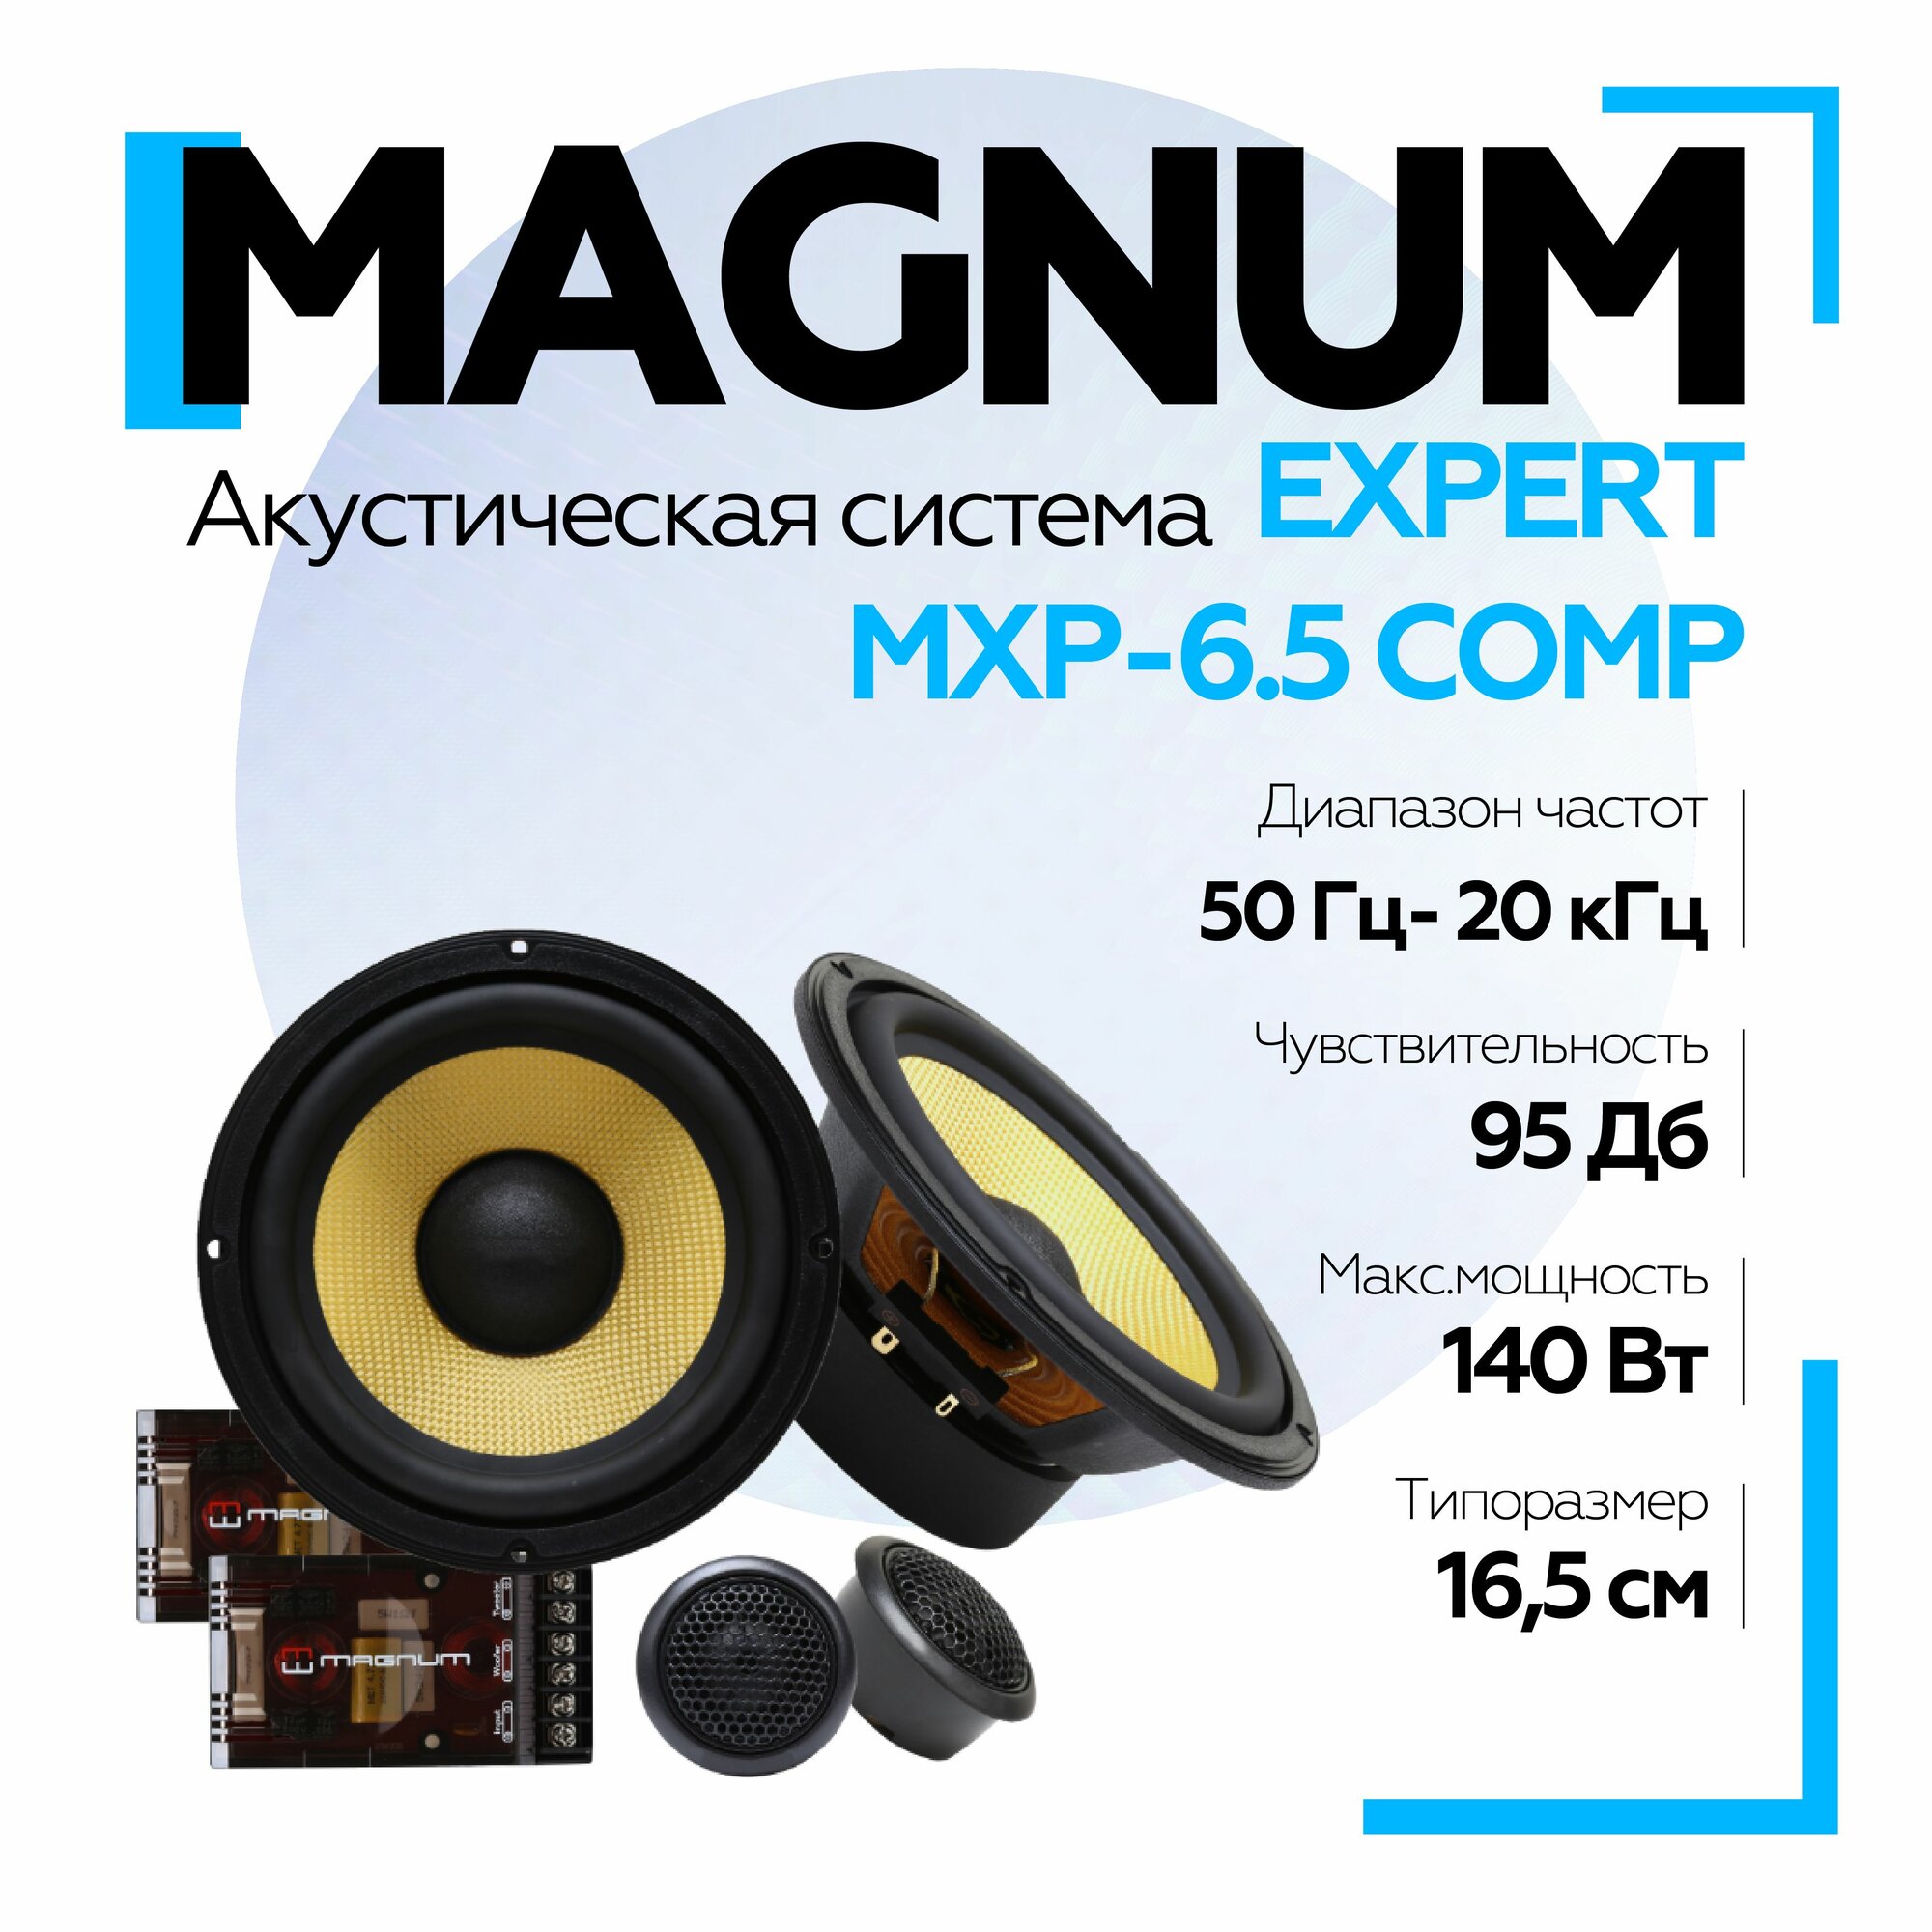 Автомобильная акустика MAGNUM EXPERT MXP-6.5 COMP 6" (16,5 см)